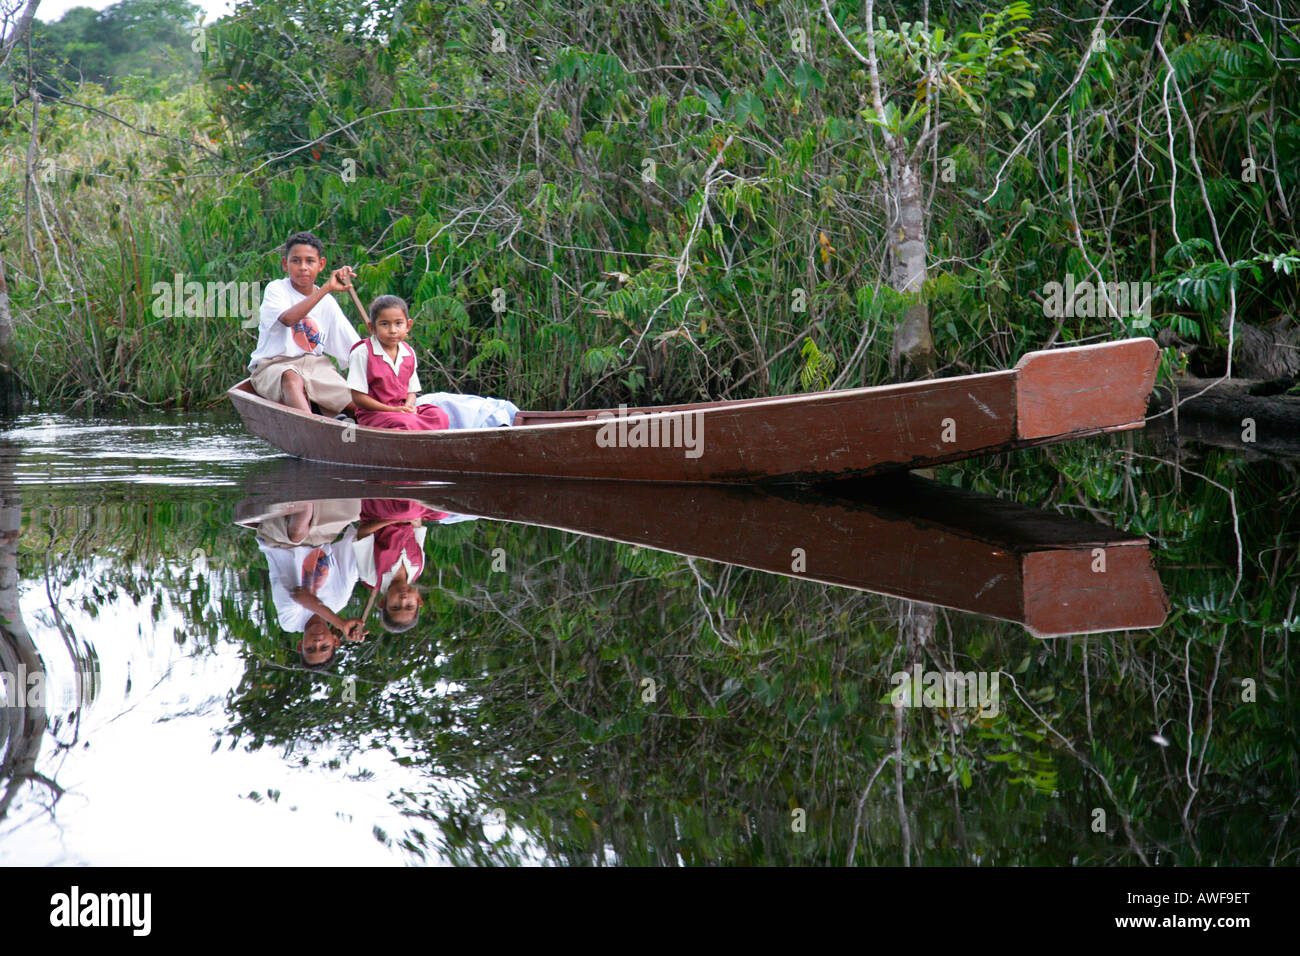 Ragazzo di prelevare la sua sorella più giovane dalla scuola con la sua barca, indigeni Arawak, Santa Missione, Guyana, Sud America Foto Stock